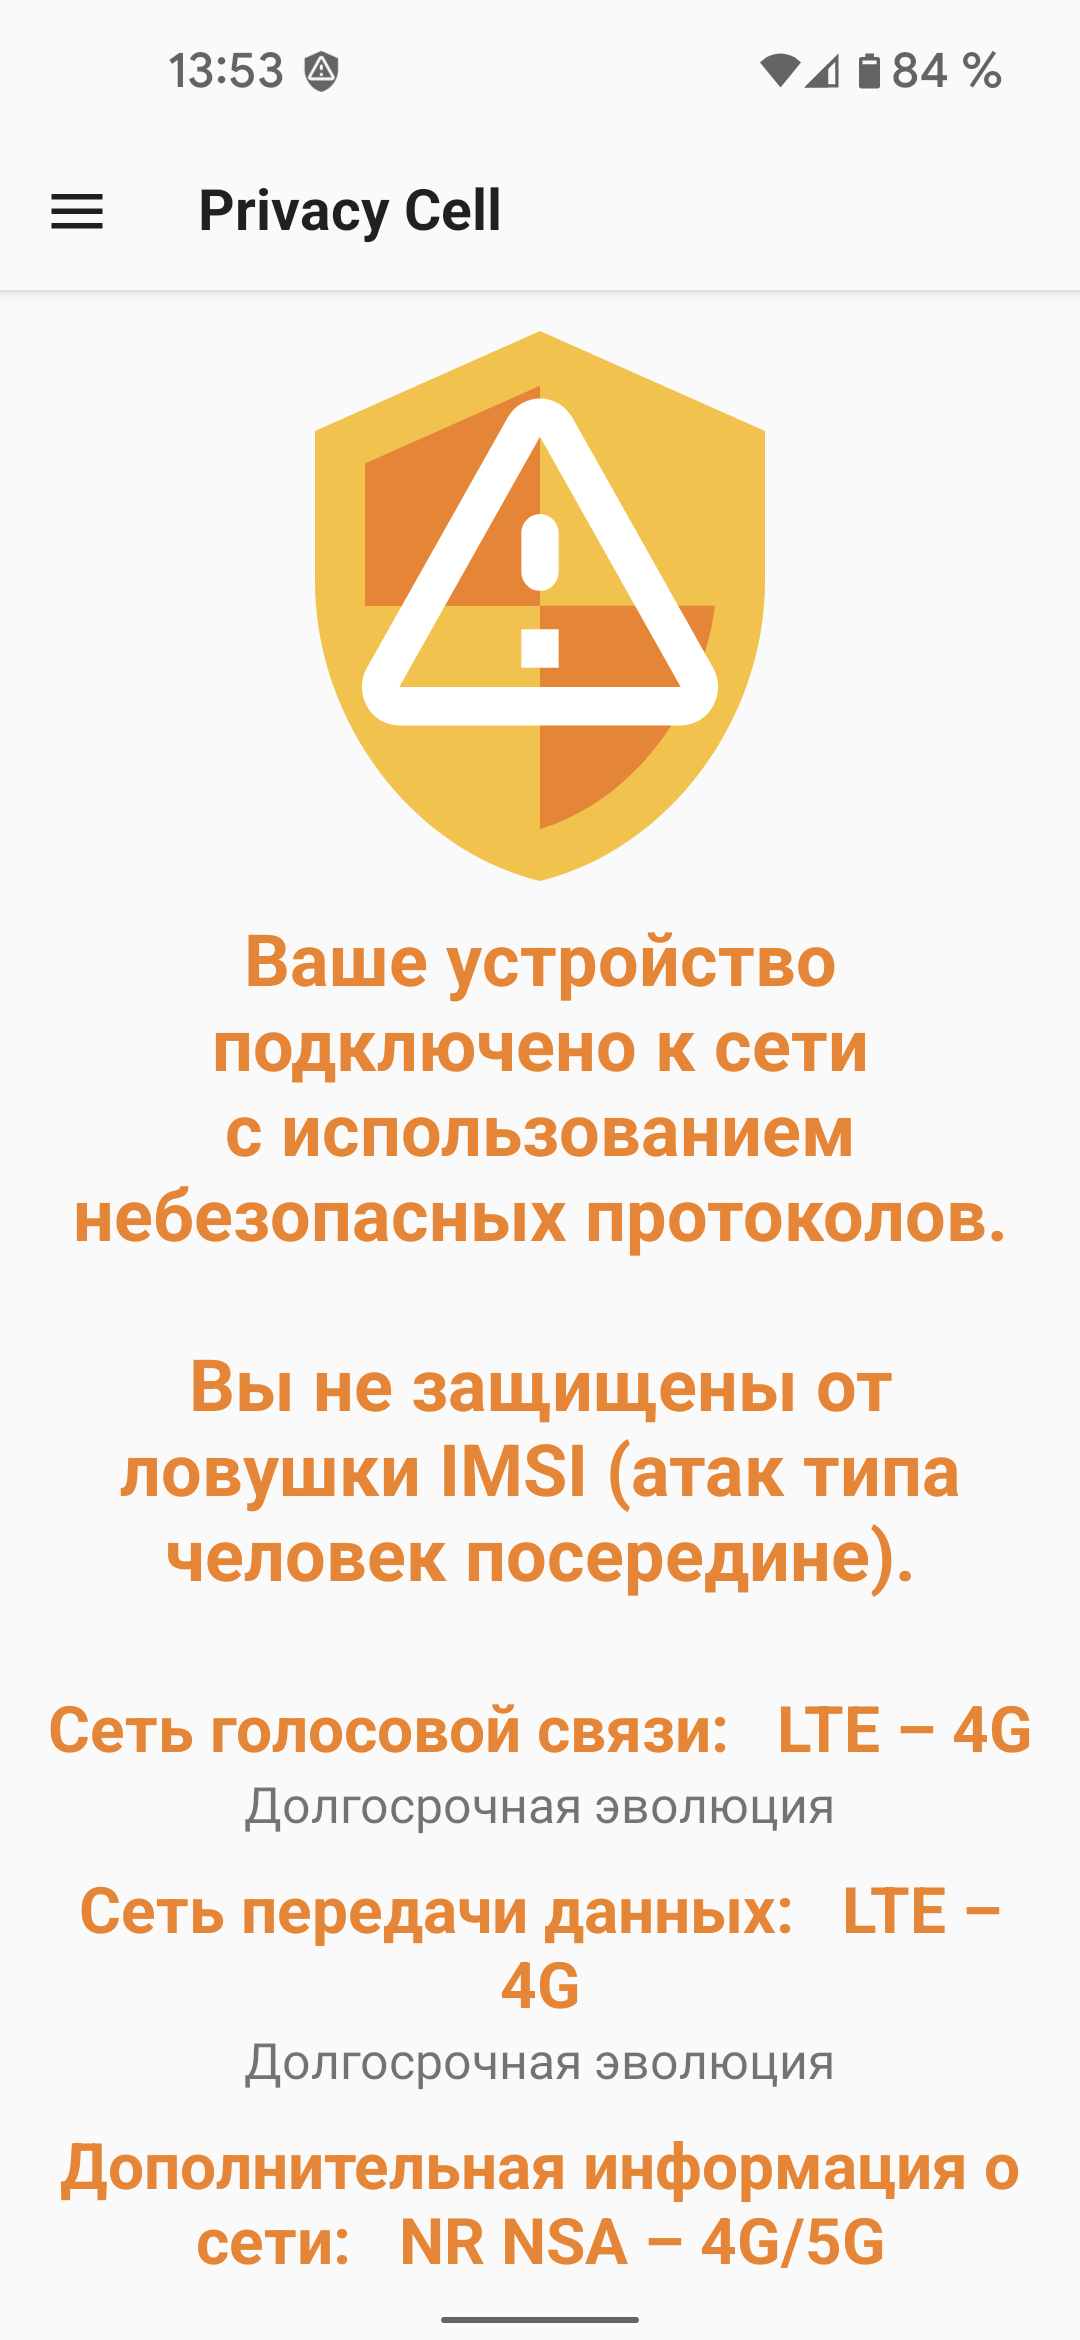 fastlane/metadata/android/ru-RU/images/phoneScreenshots/02-InsecureNetwork-ru.png